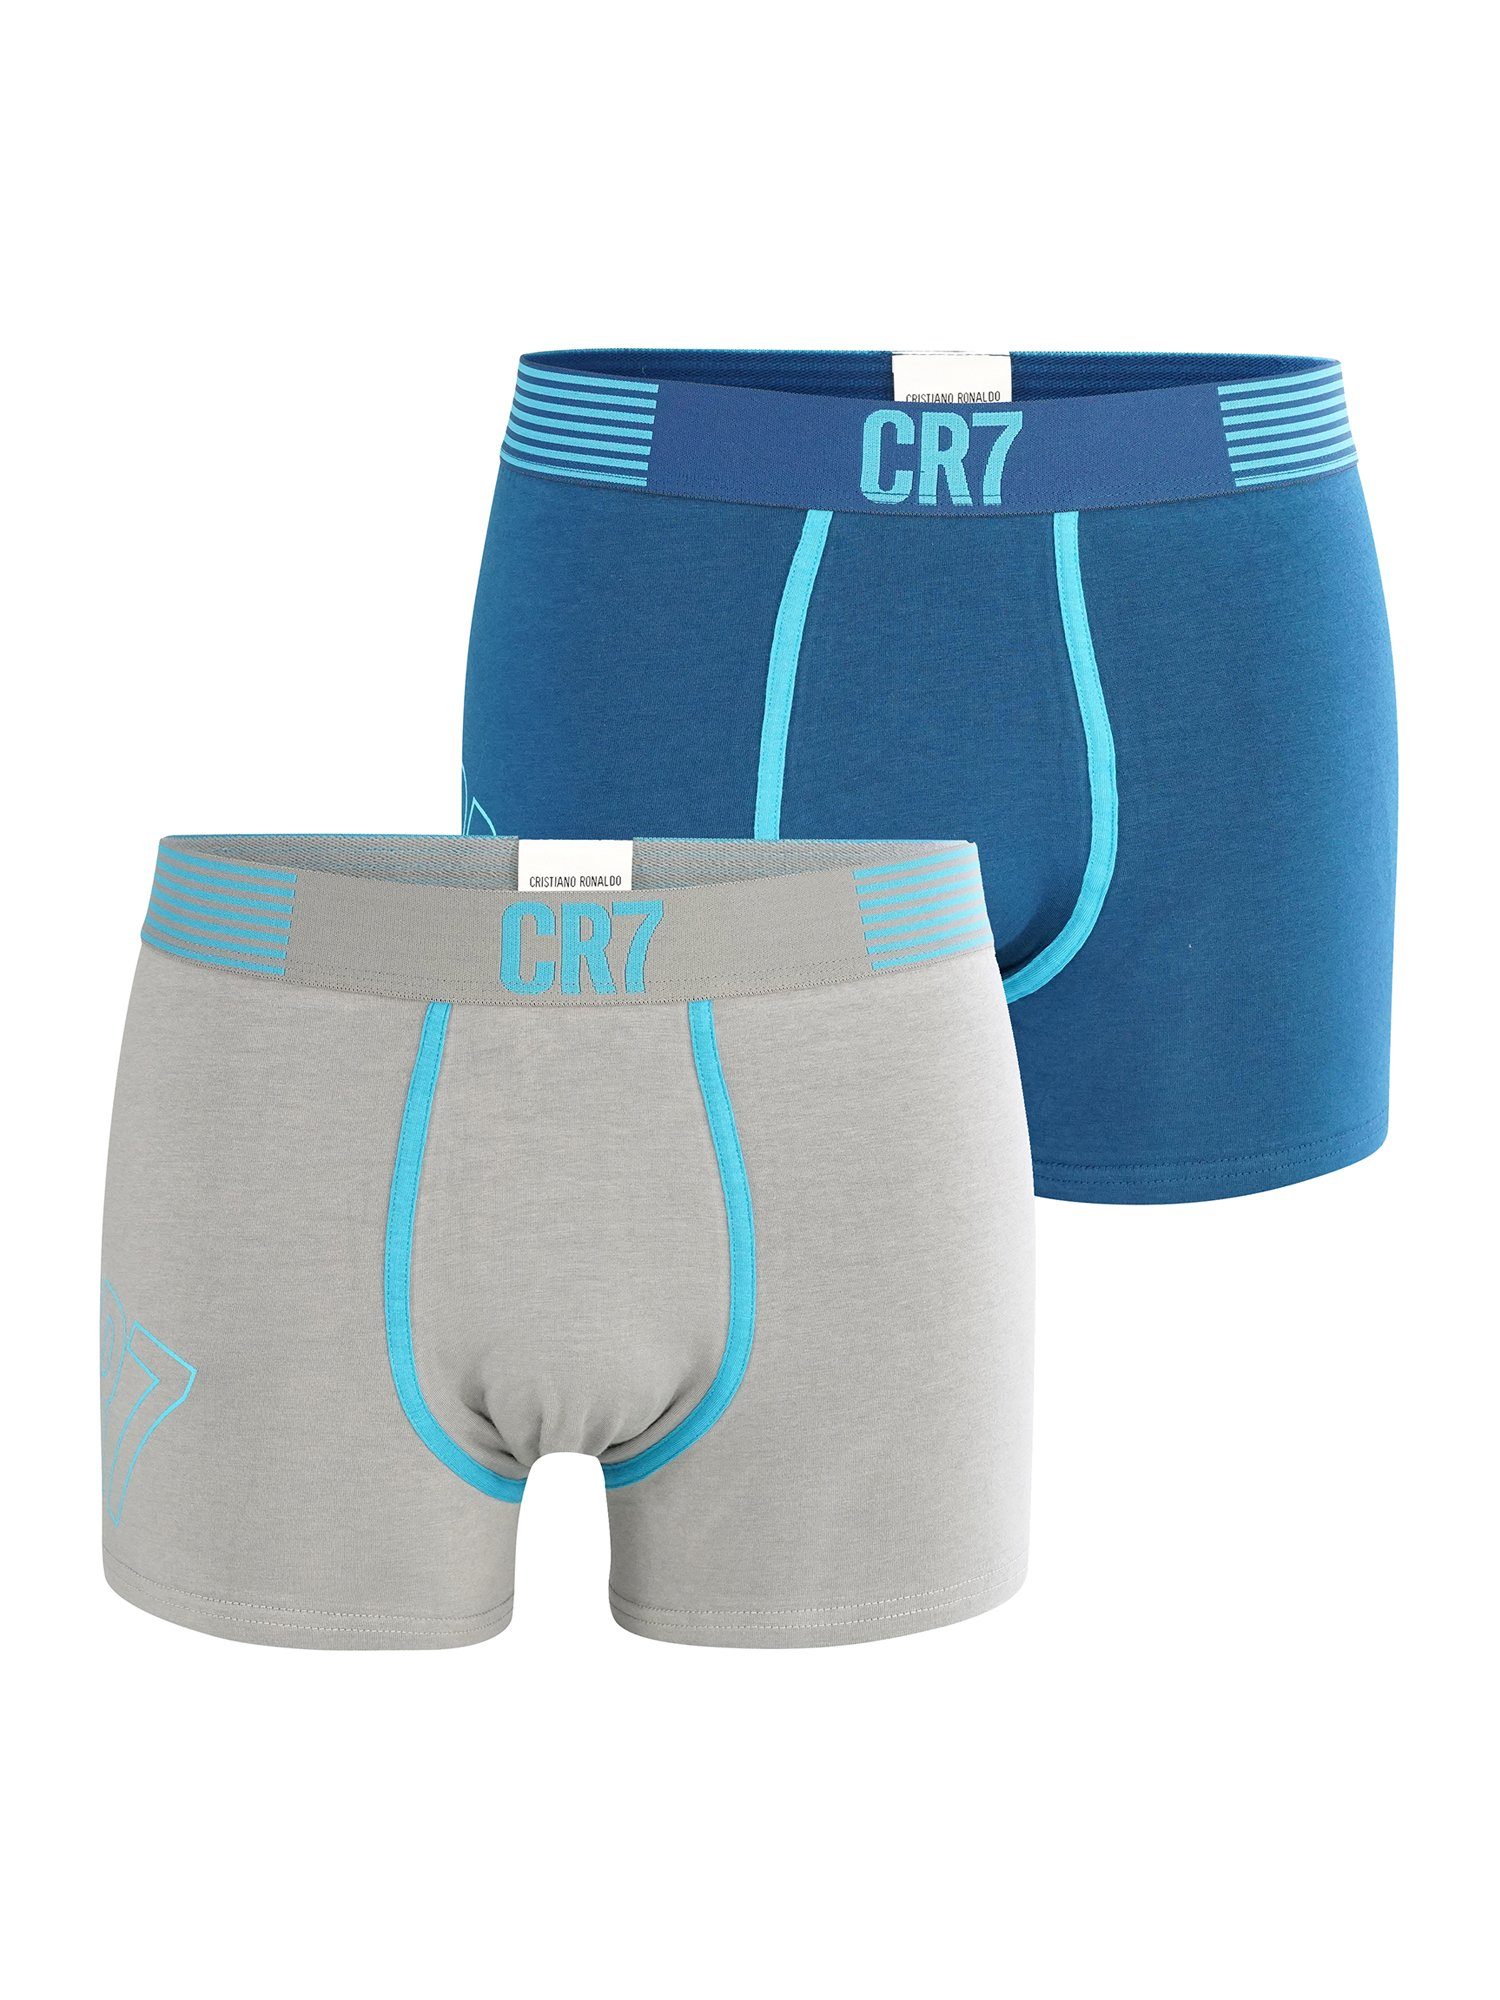 CR7 Retro Pants FASHION 2-Pack grau/blau